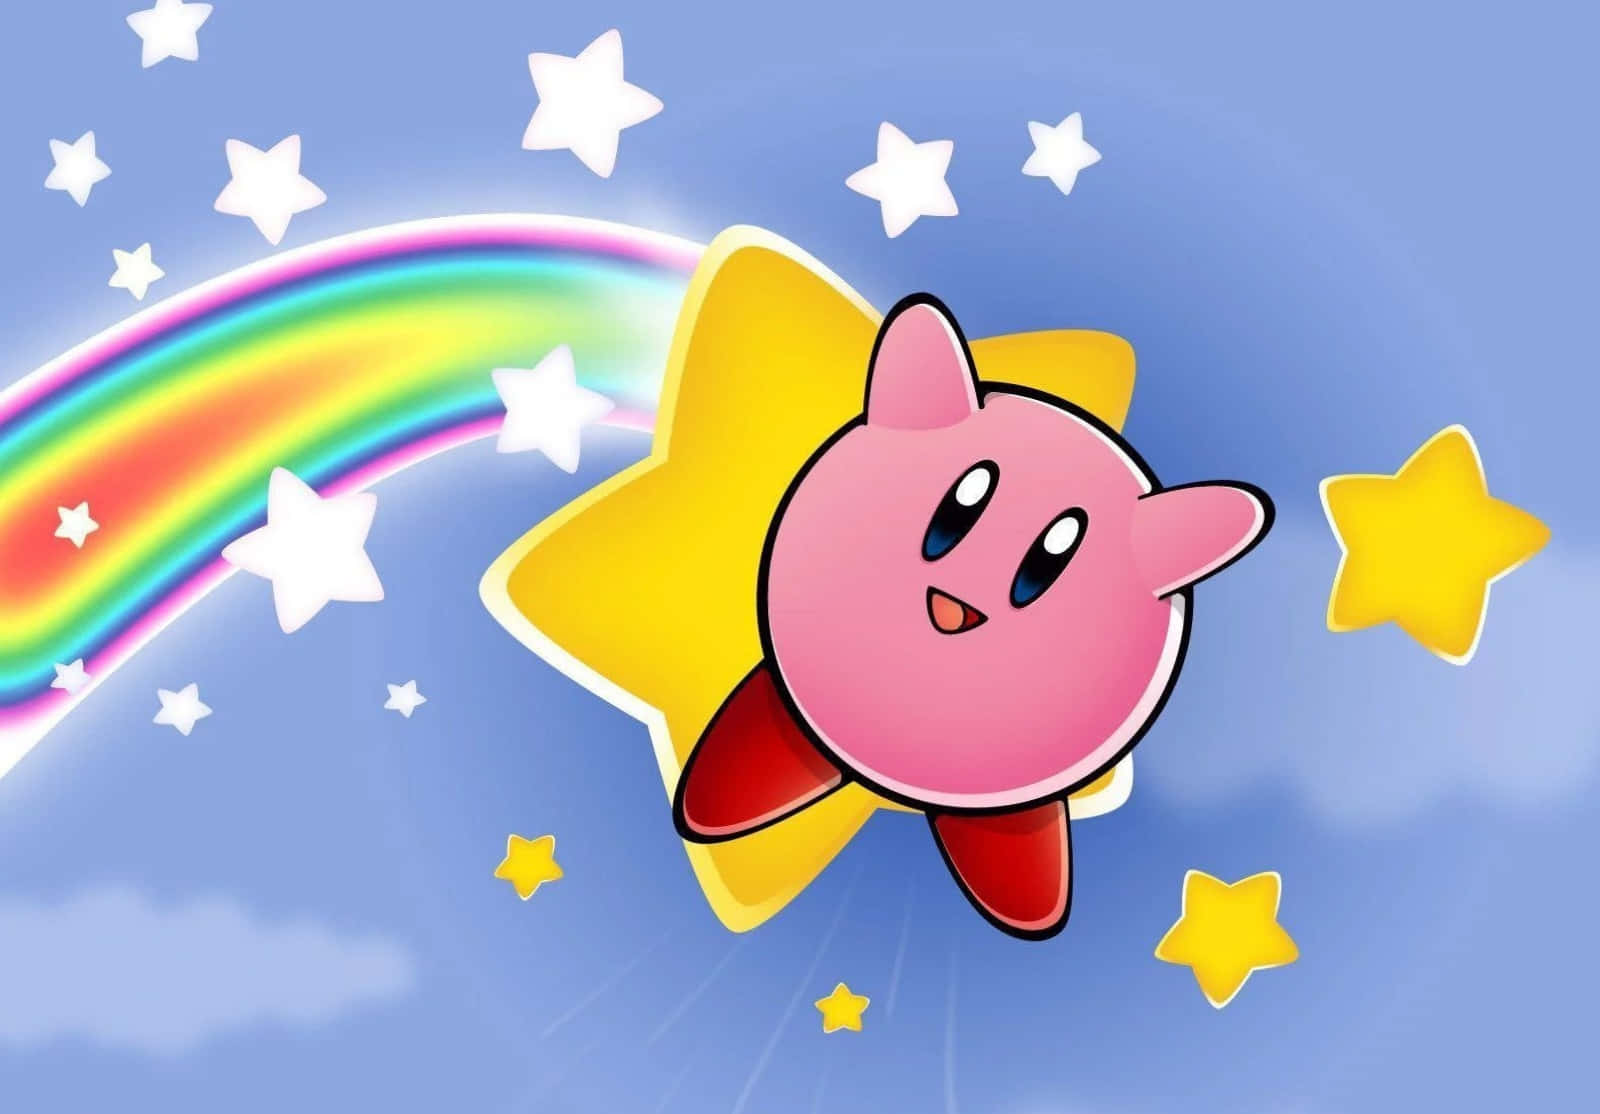 Personajede Dibujos Animados Kirby Volando A Través De Un Paisaje De Colores Brillantes.